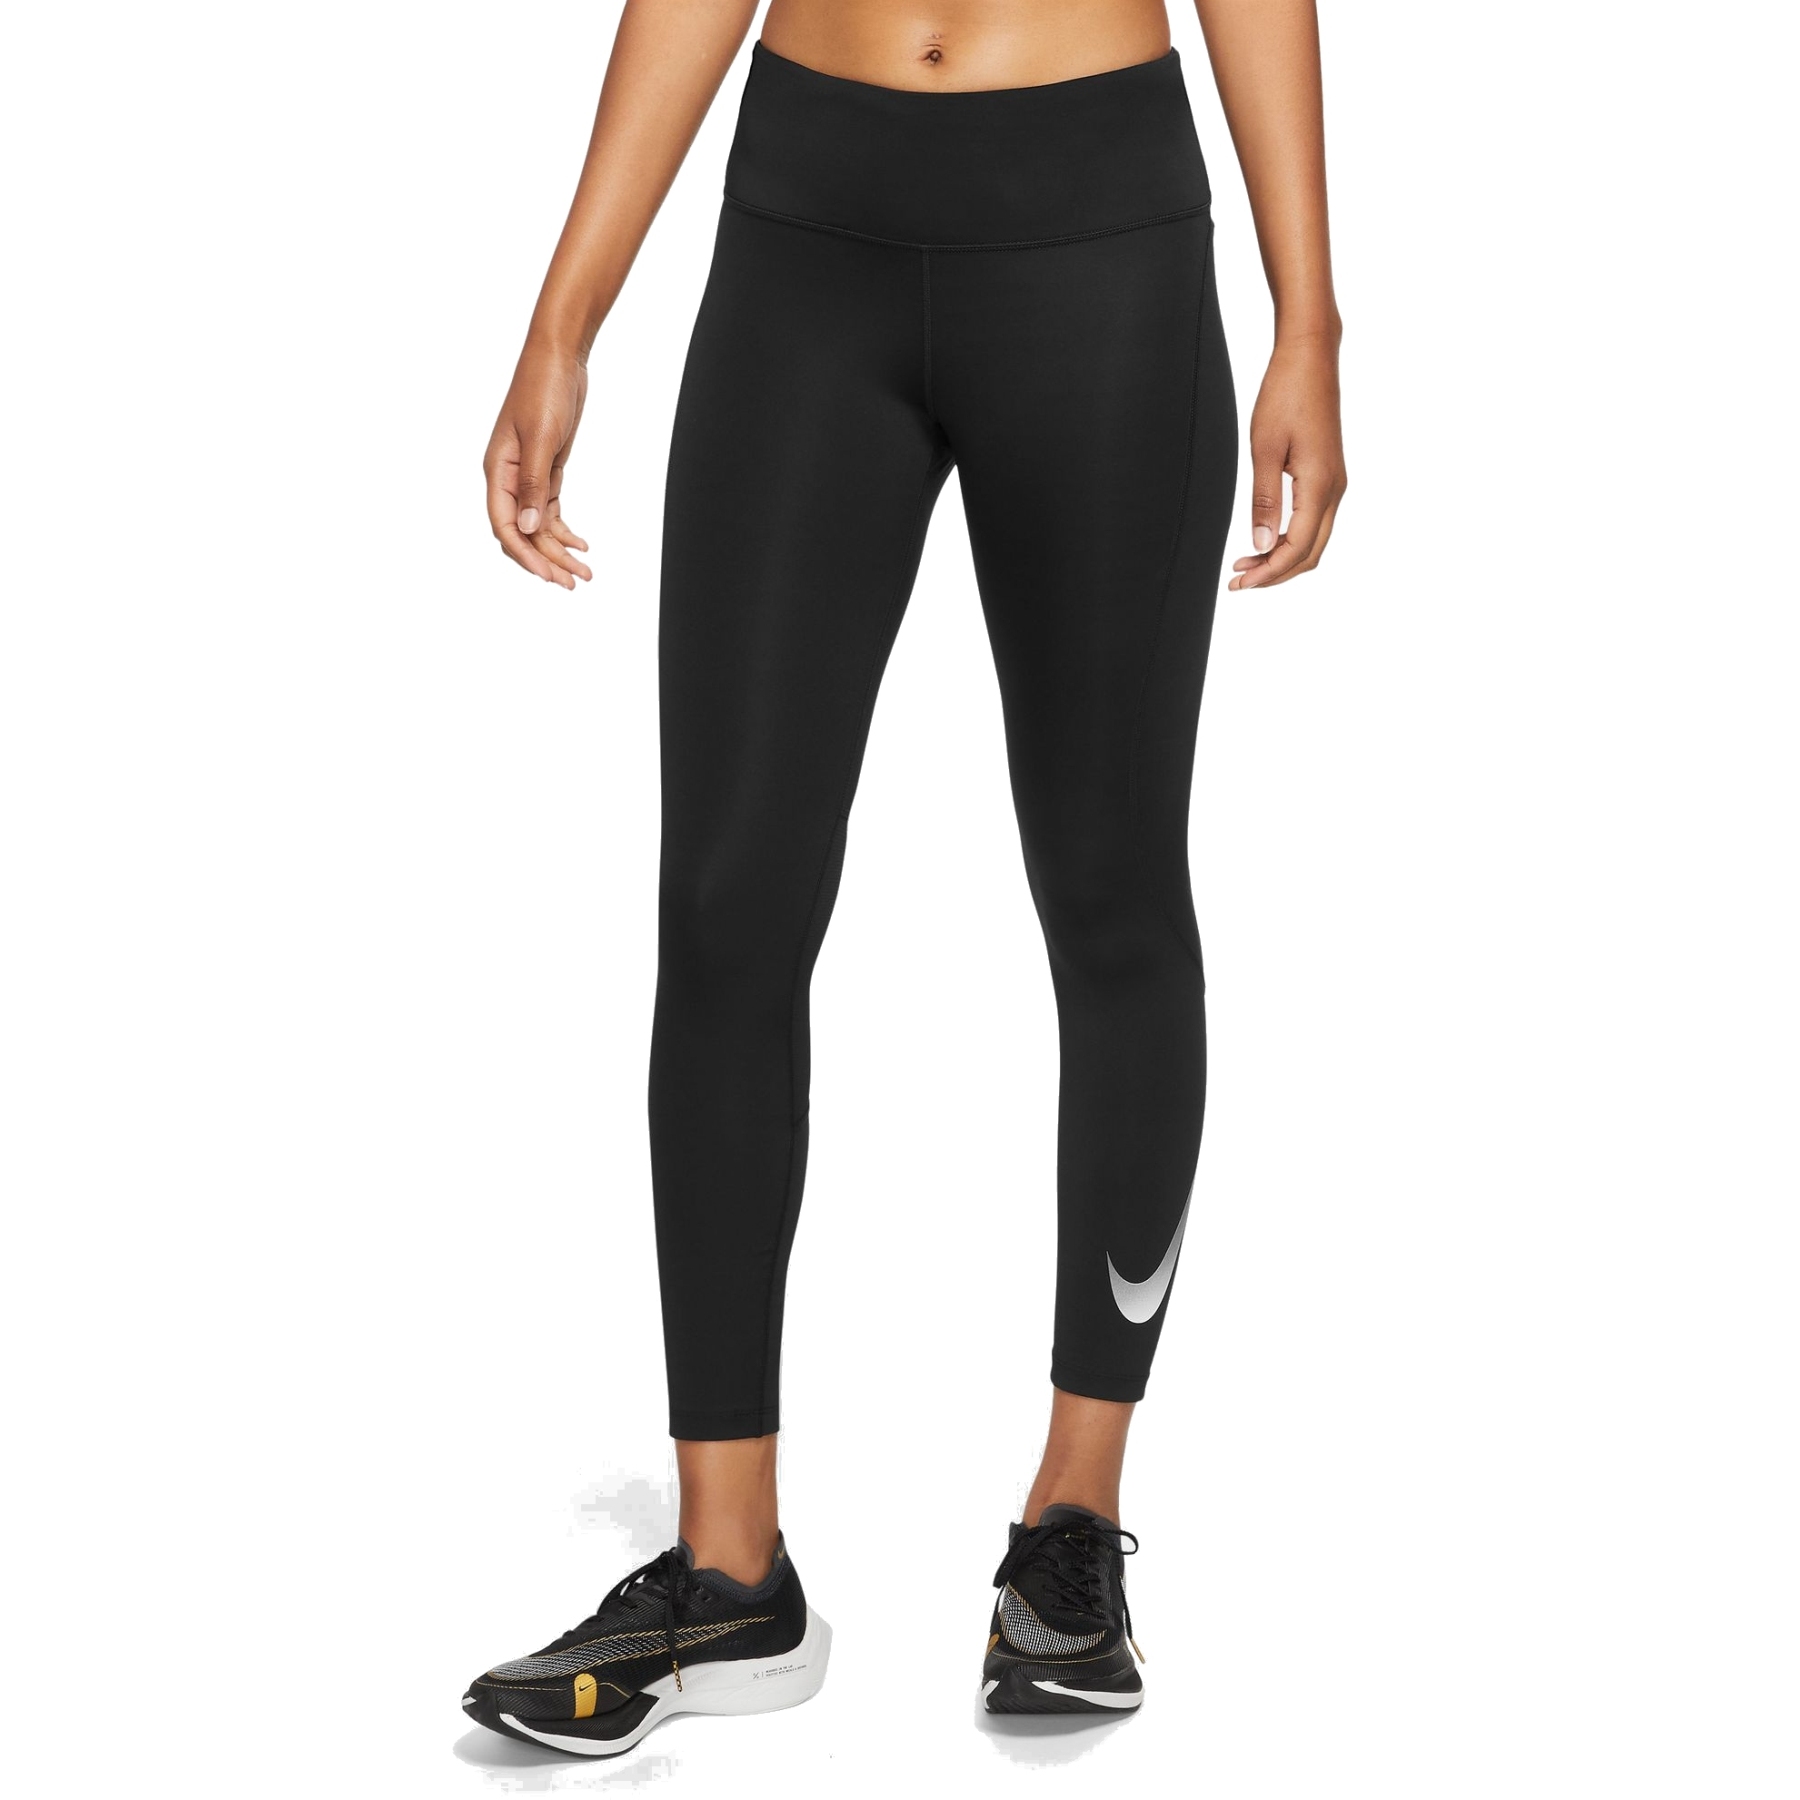 Produktbild von Nike Fast 7/8-Lauf-Leggings für Damen - black/reflective silver DX0948-010